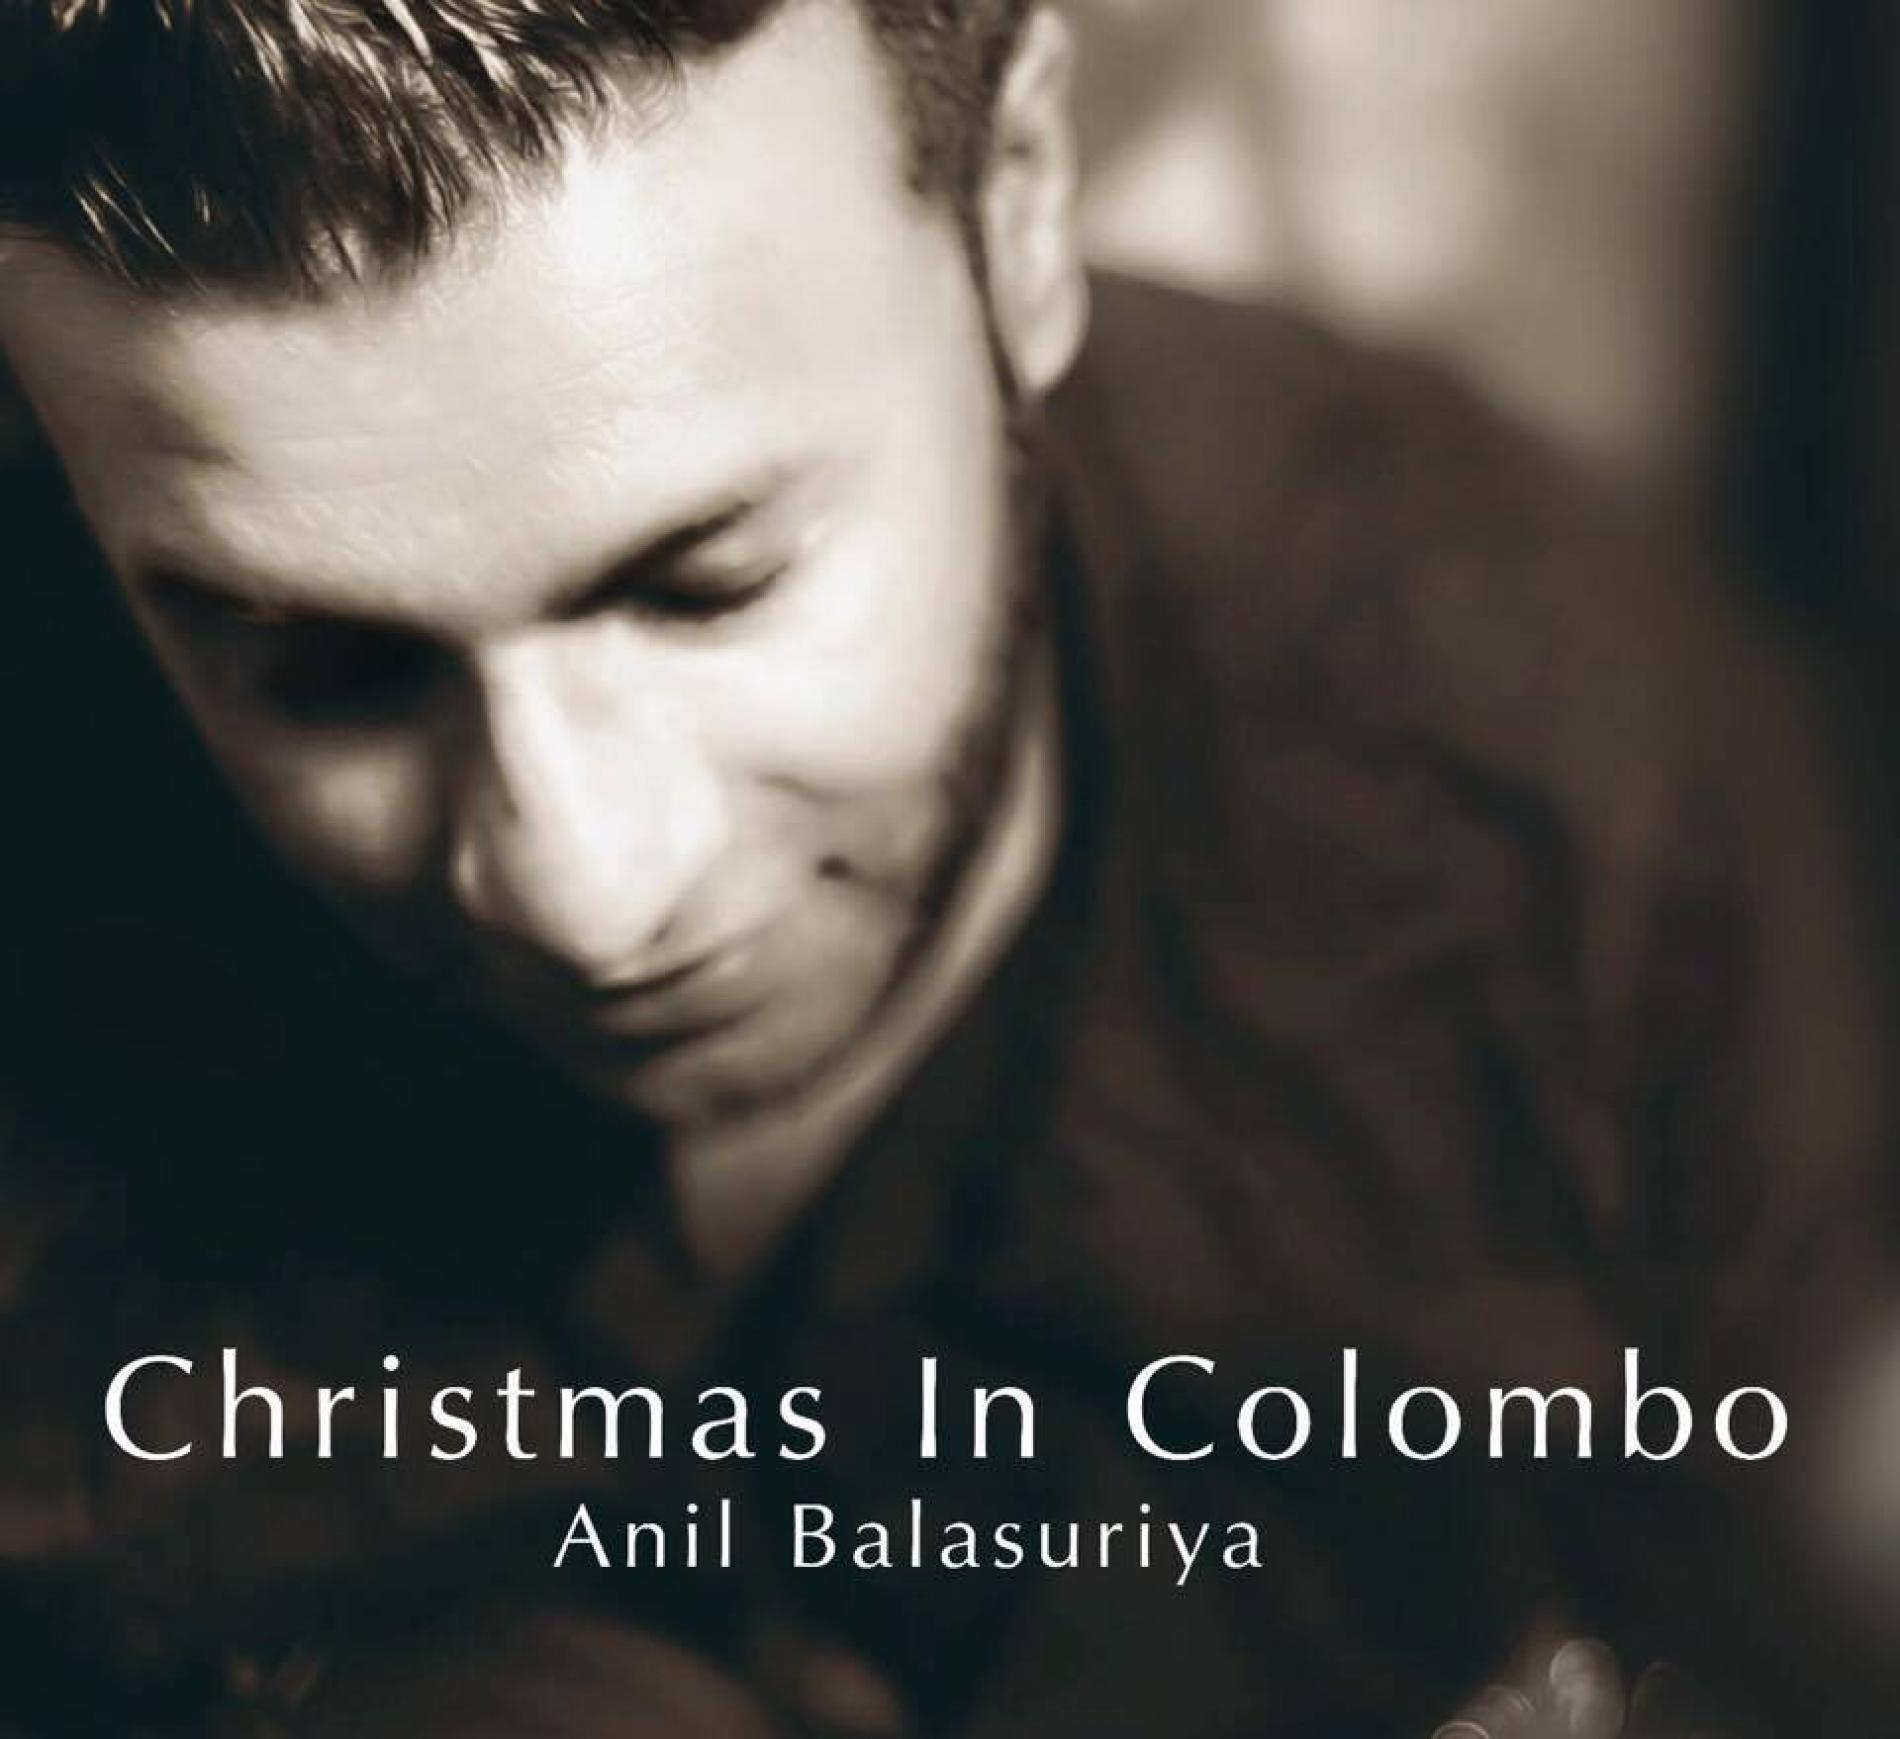 Anil Balasuriya – Christmas In Colombo (Her Song)